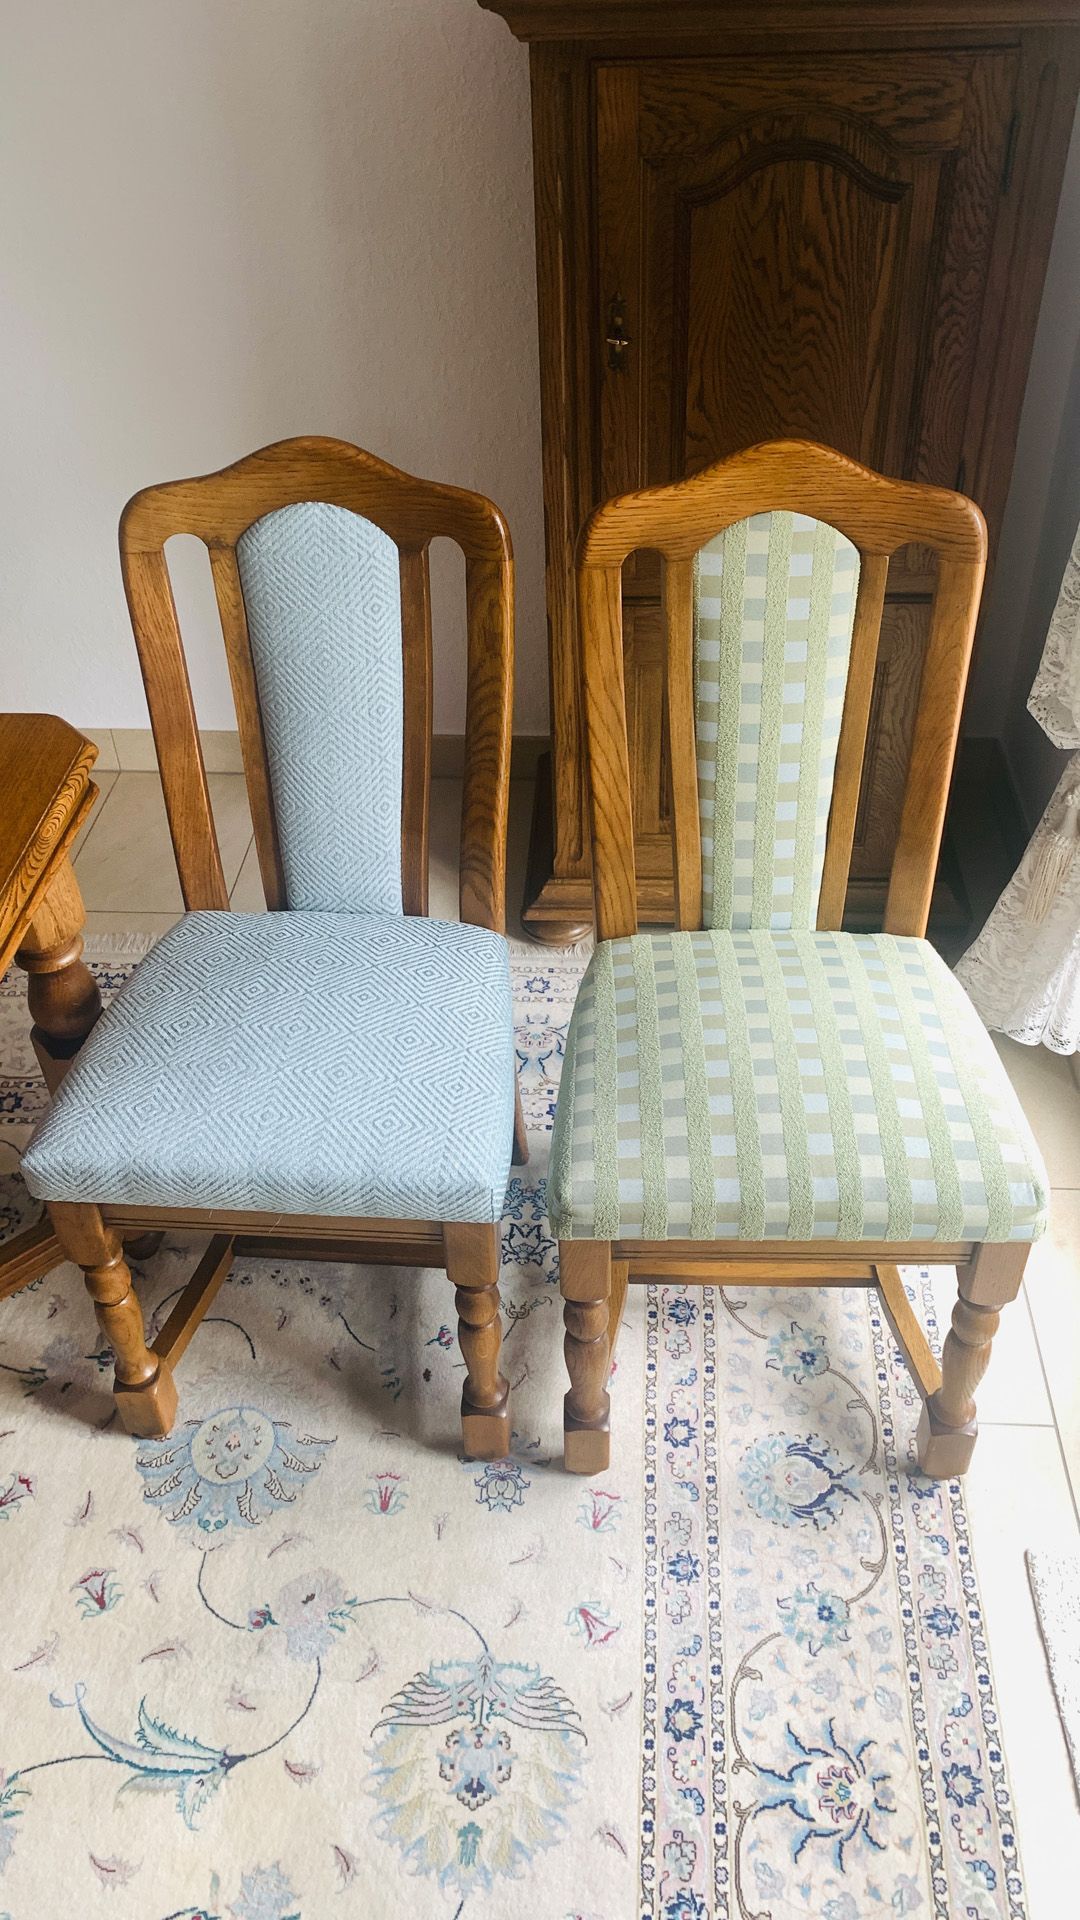 zwei Stühle auf einem Teppich